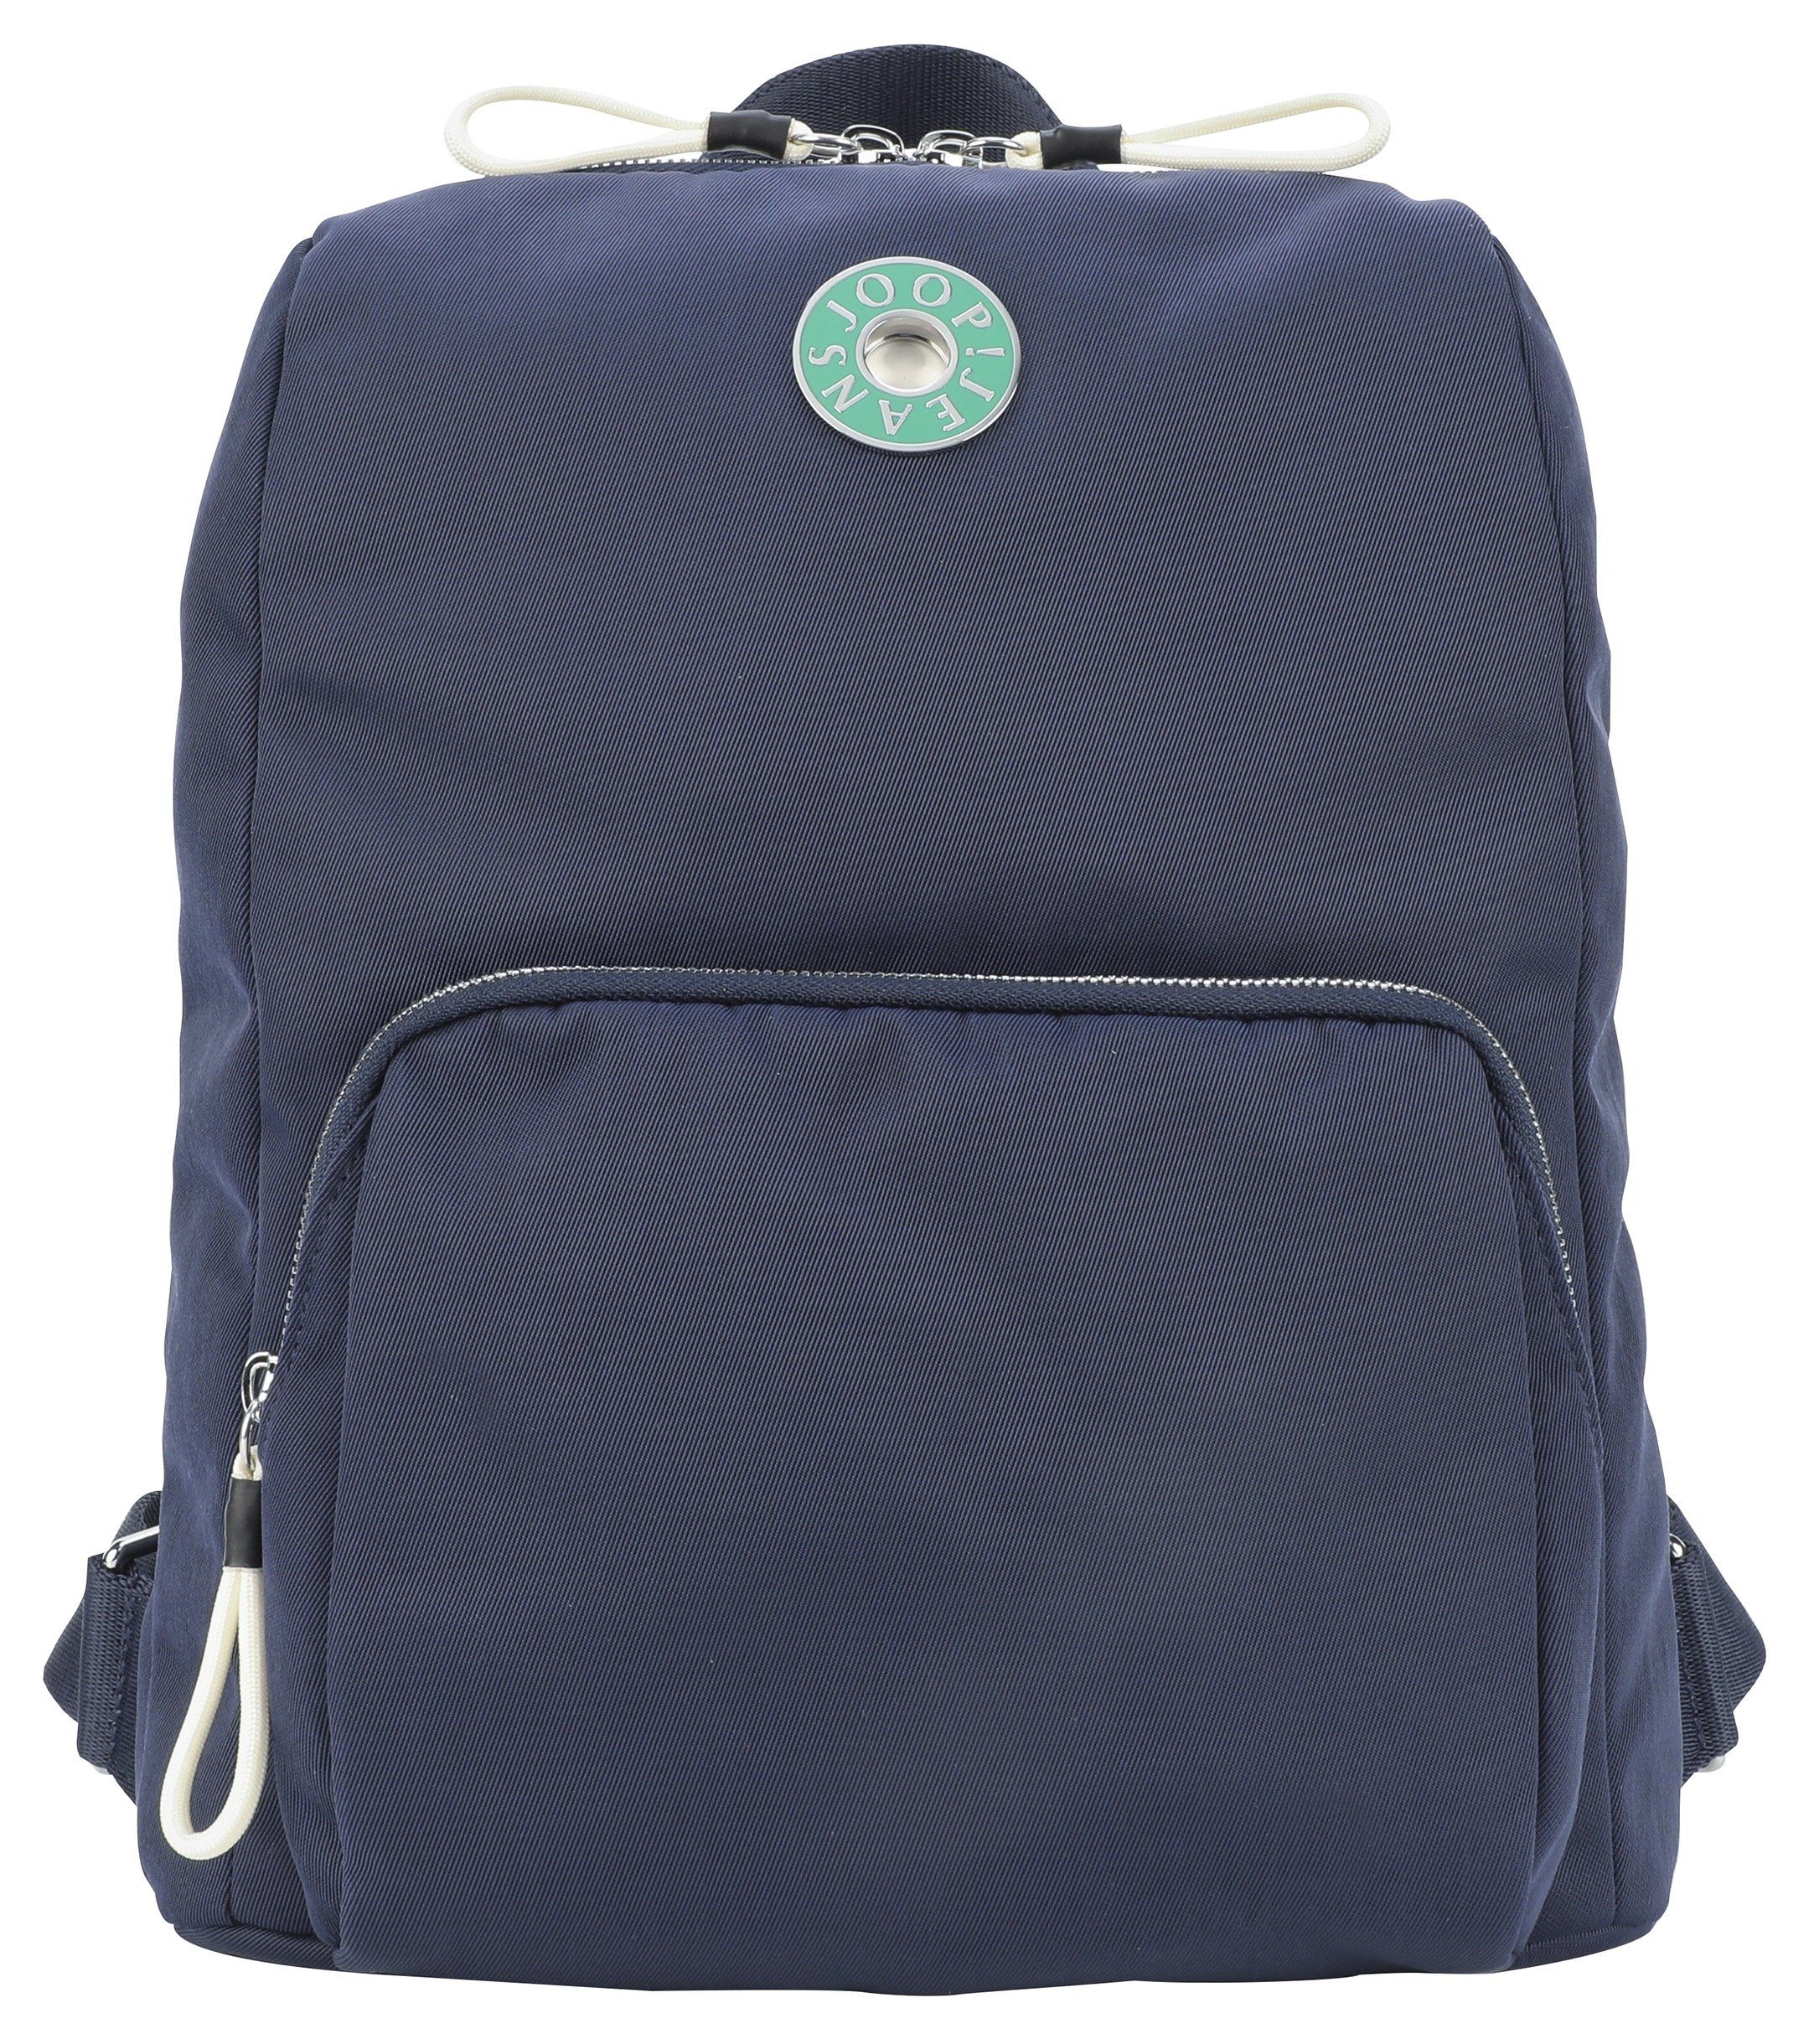 Joop Jeans Cityrucksack giocoso nivia backpack mvz, im praktischen Design dunkelblau